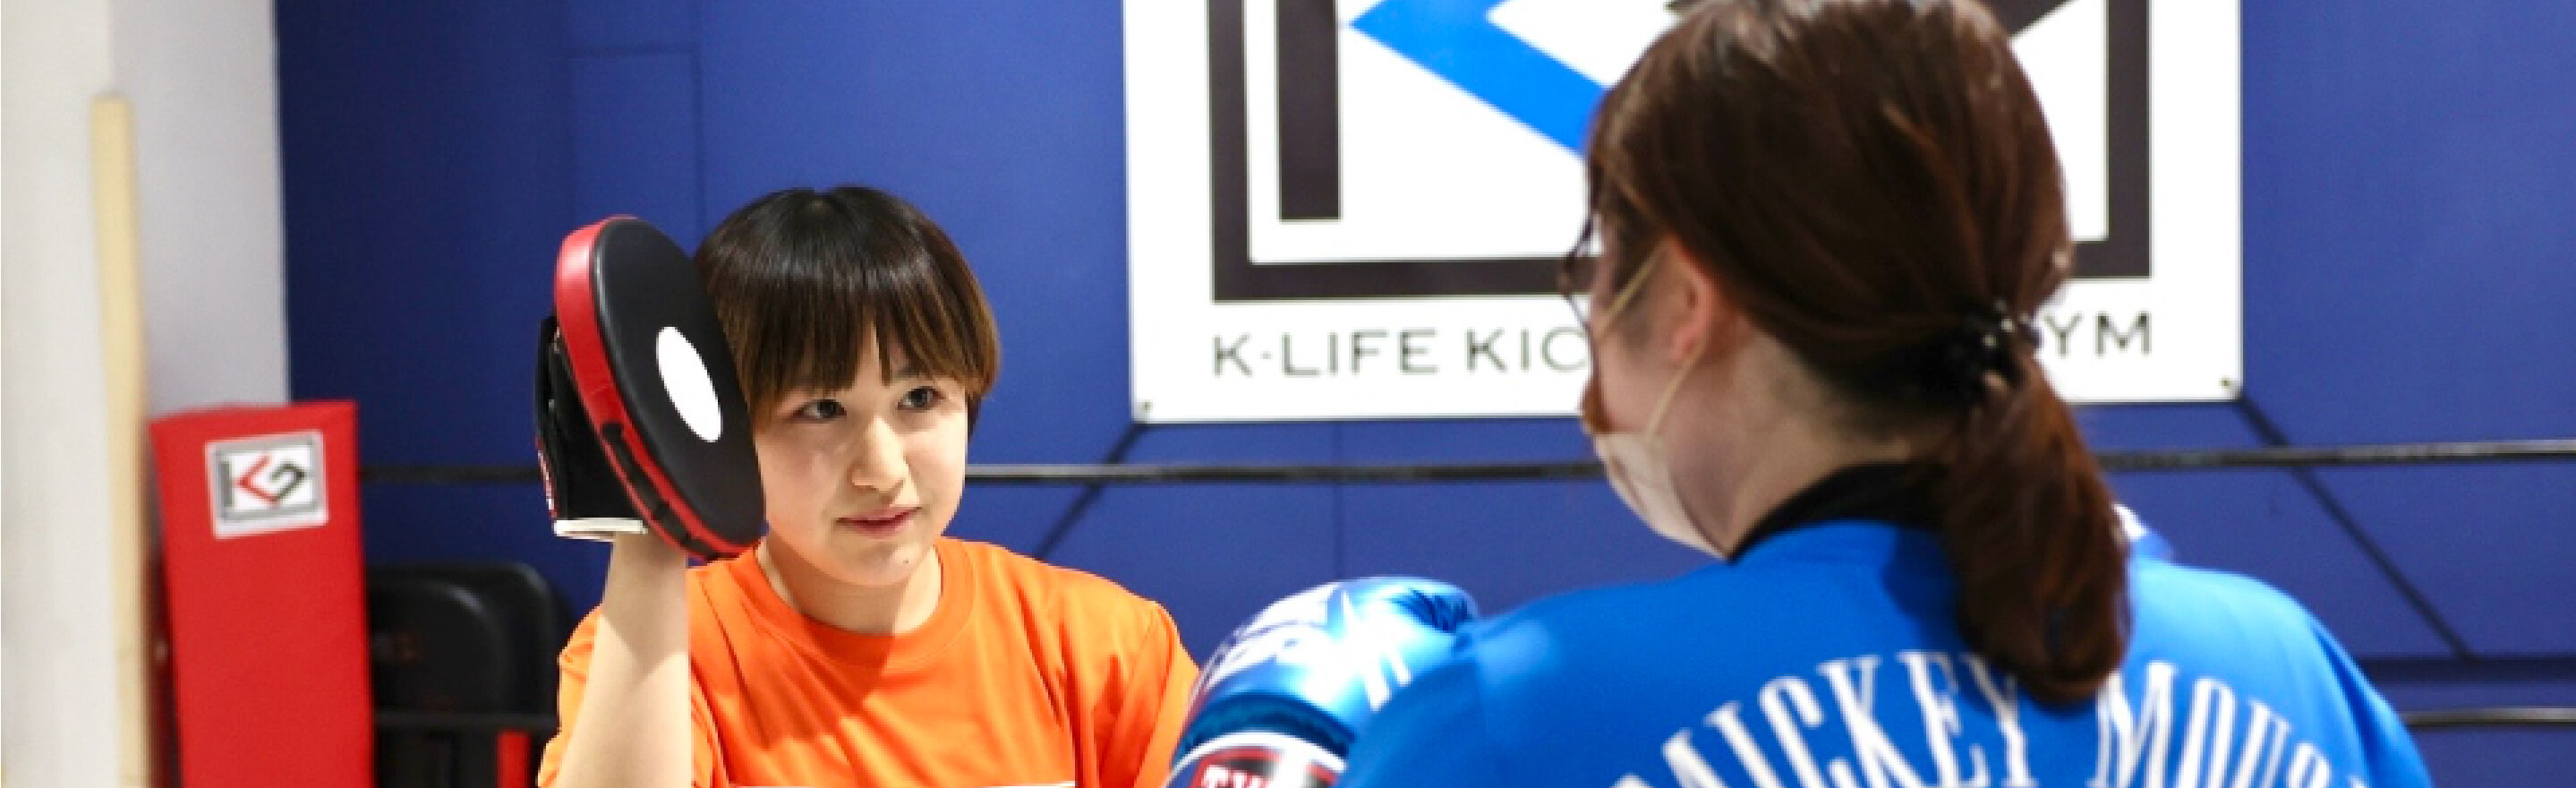 k-life kickboxing|キックボクシングをライフスタイルに